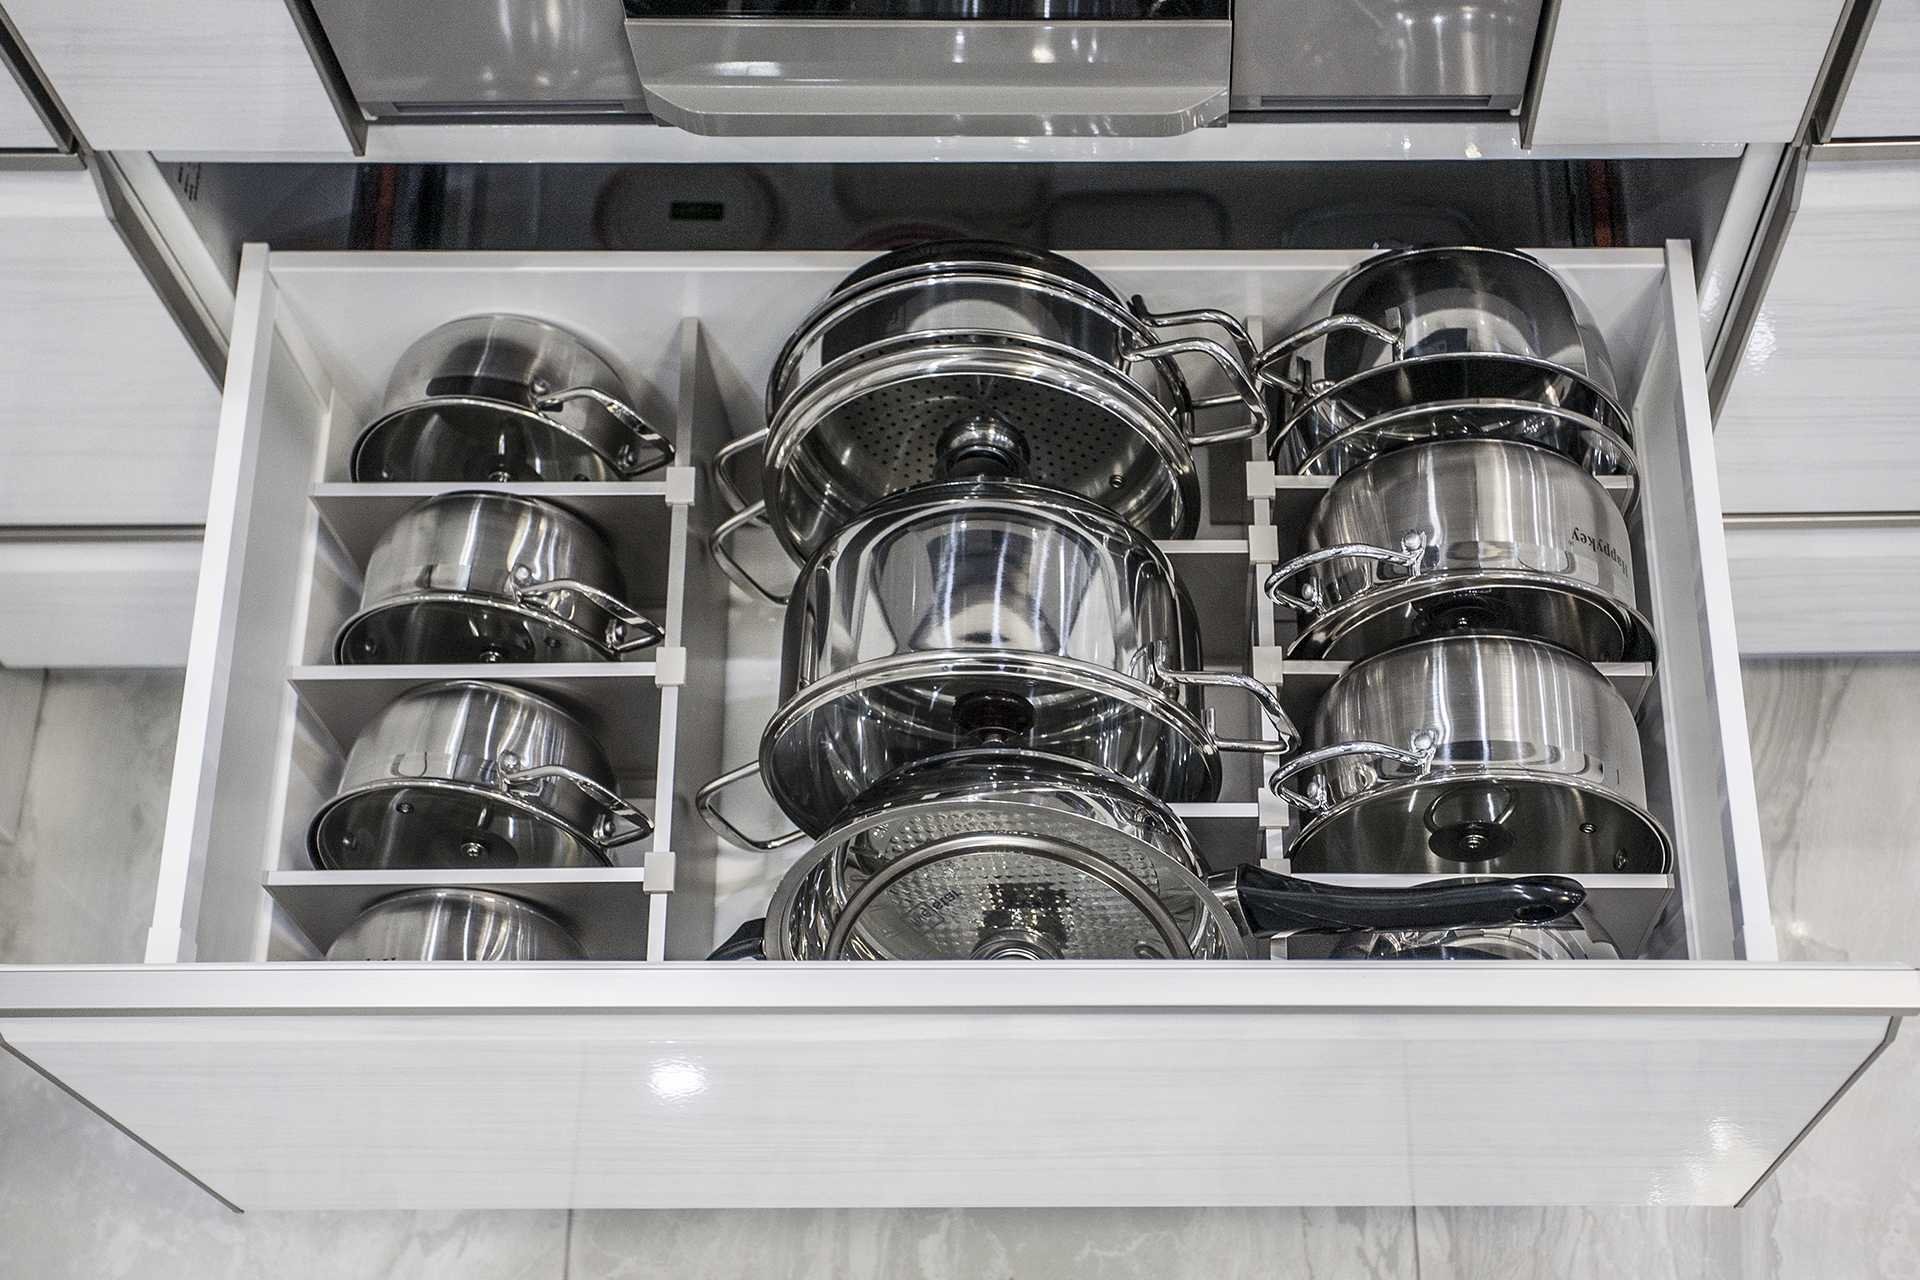 Các khoang tủ chứa nồi của hệ tủ bếp Takara standard có thể chứa từ 9 – 11 chiếc nồi lớn nhỏ, sắp xếp ngăn nắp nhờ thanh chia ngăn nam châm